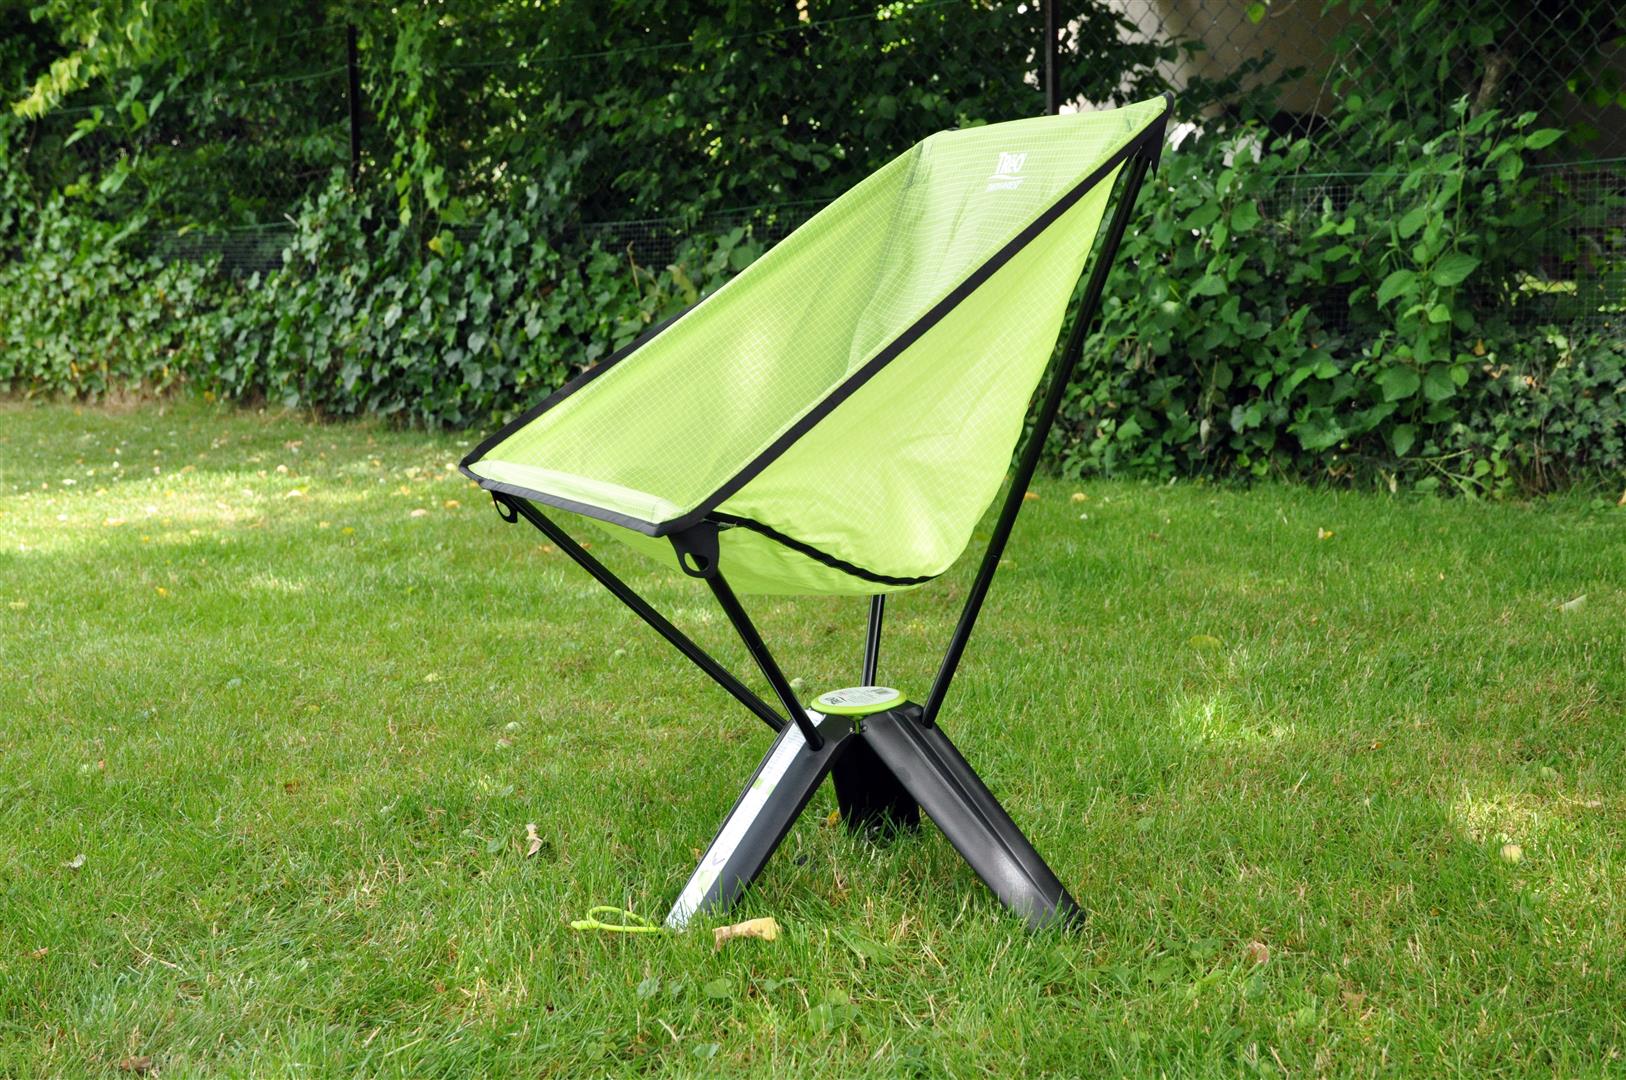 Thermarest Treo Chair - Der Campingstuhl der in den Daypack passt